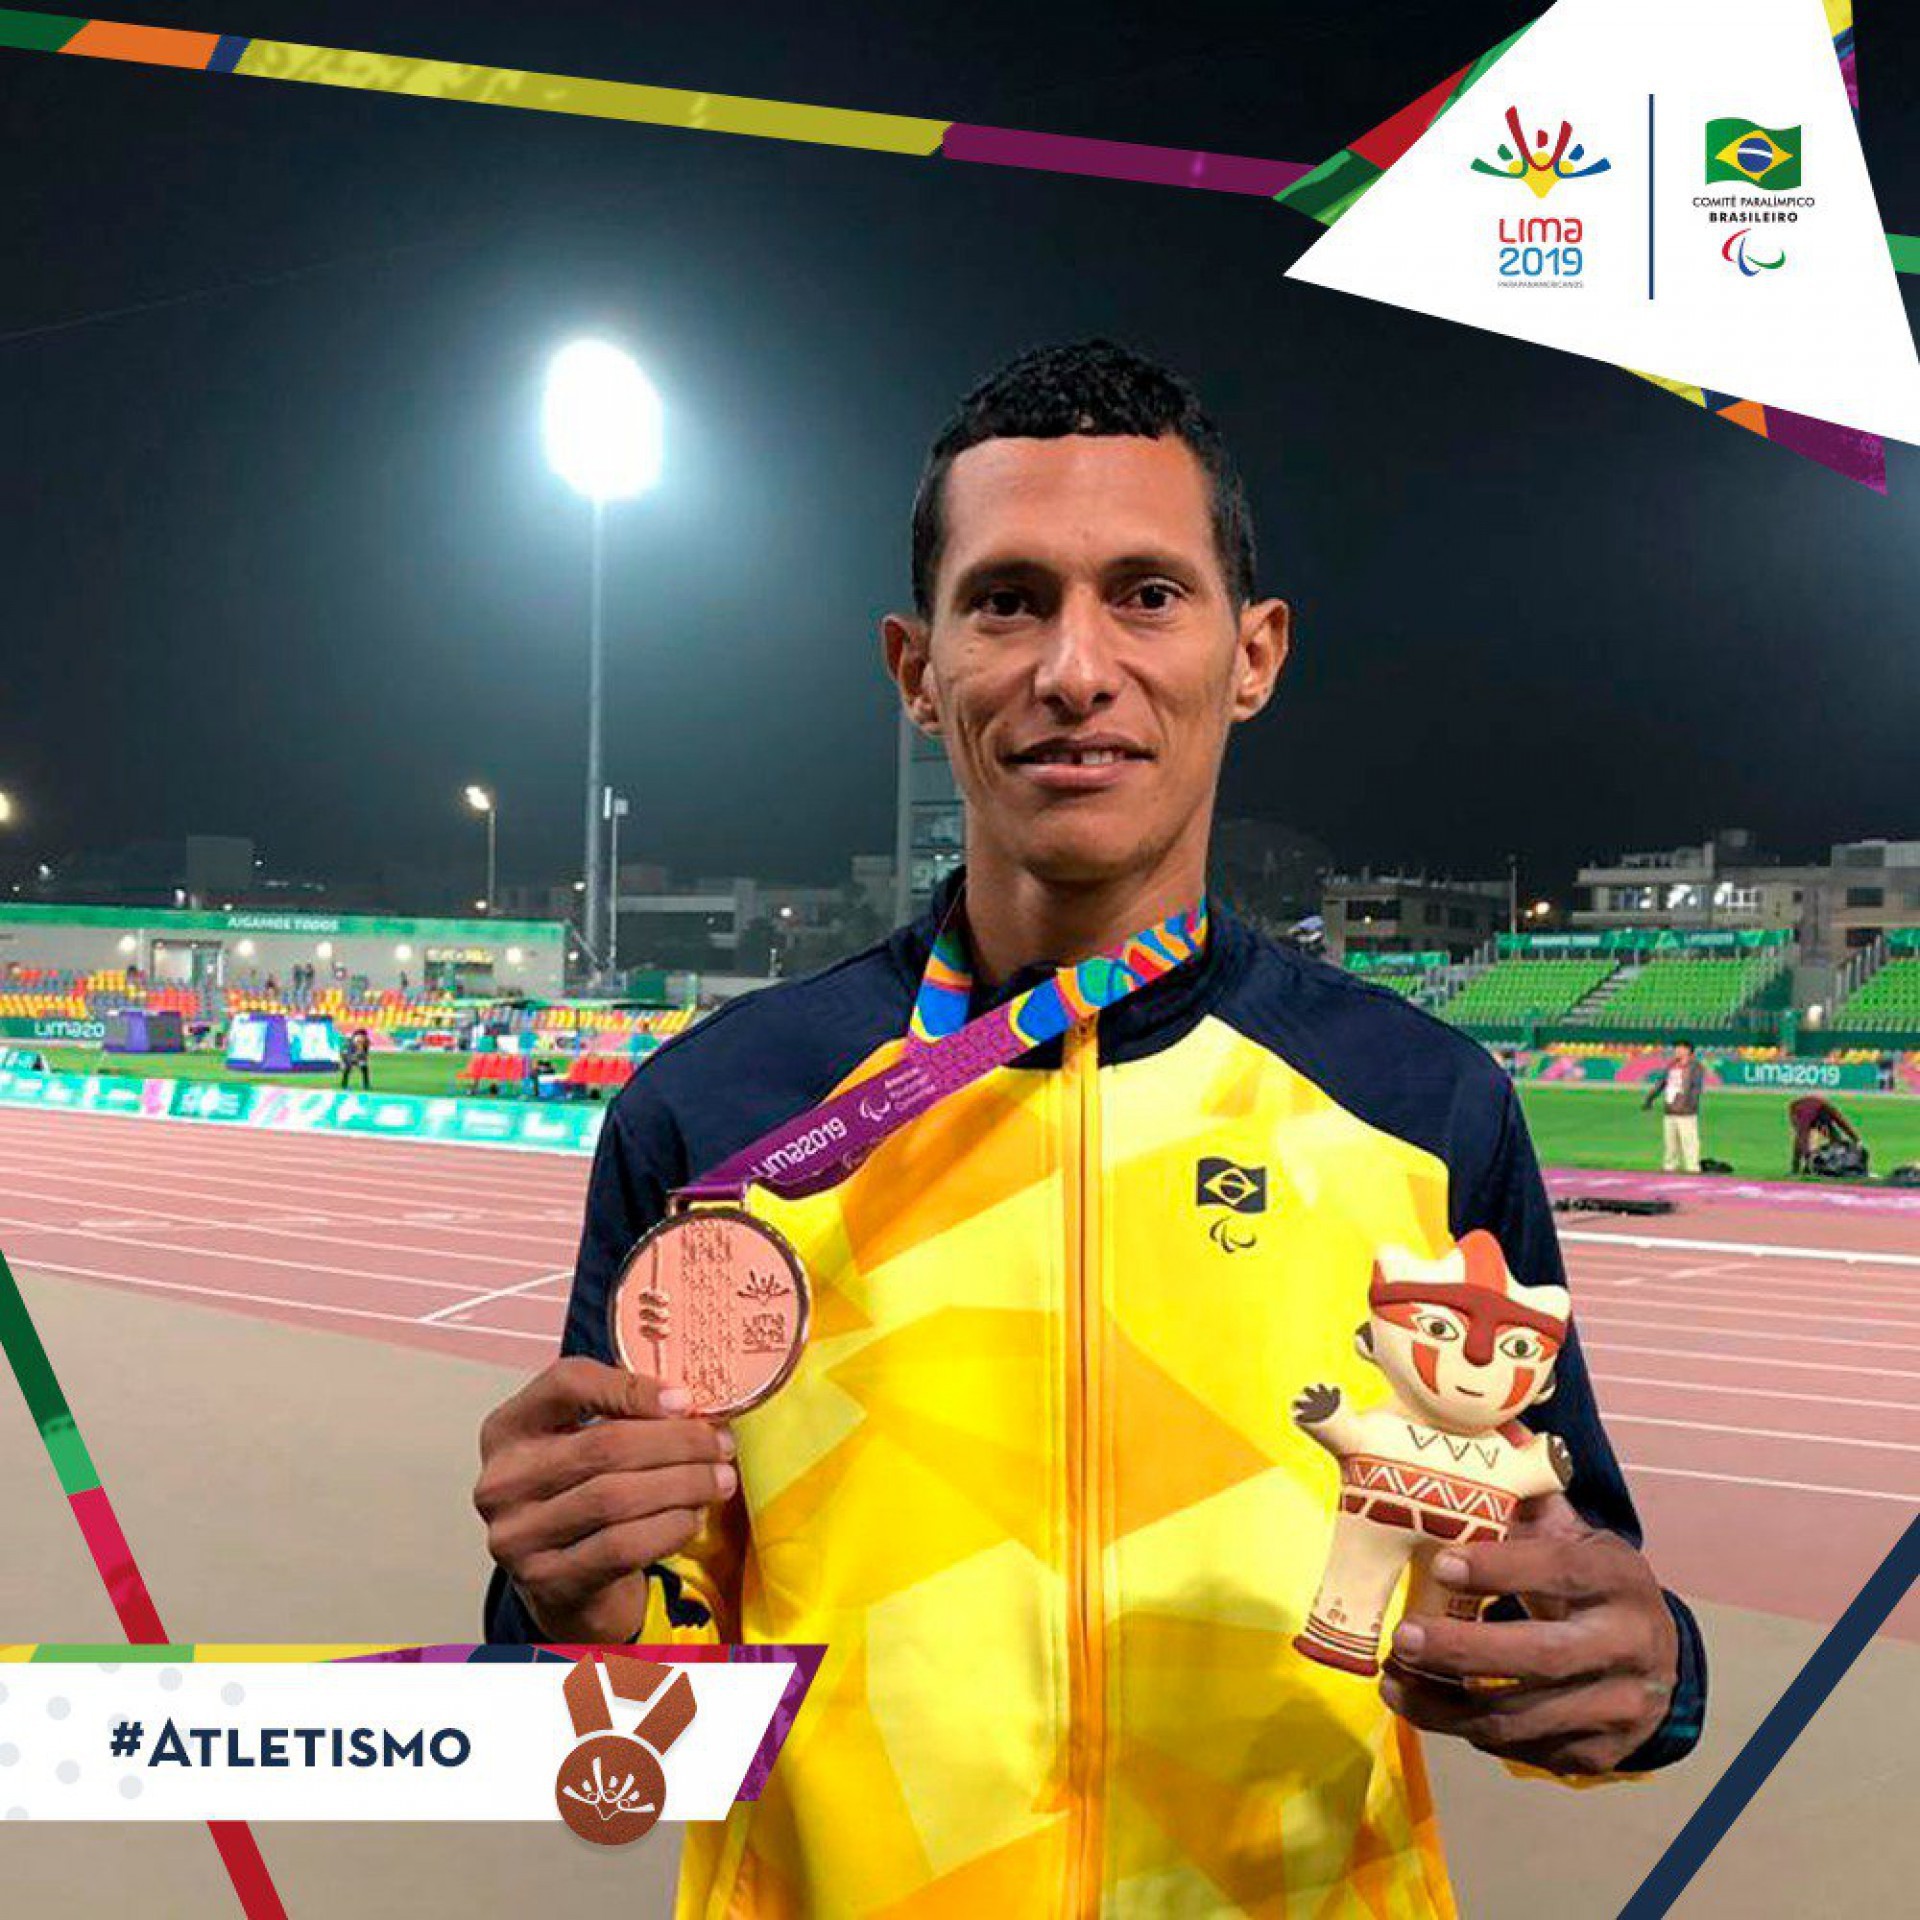 Francisco Jefferson irá representar o Ceará no atletismo dos Jogos Paralímpicos de Tóquio 2020.